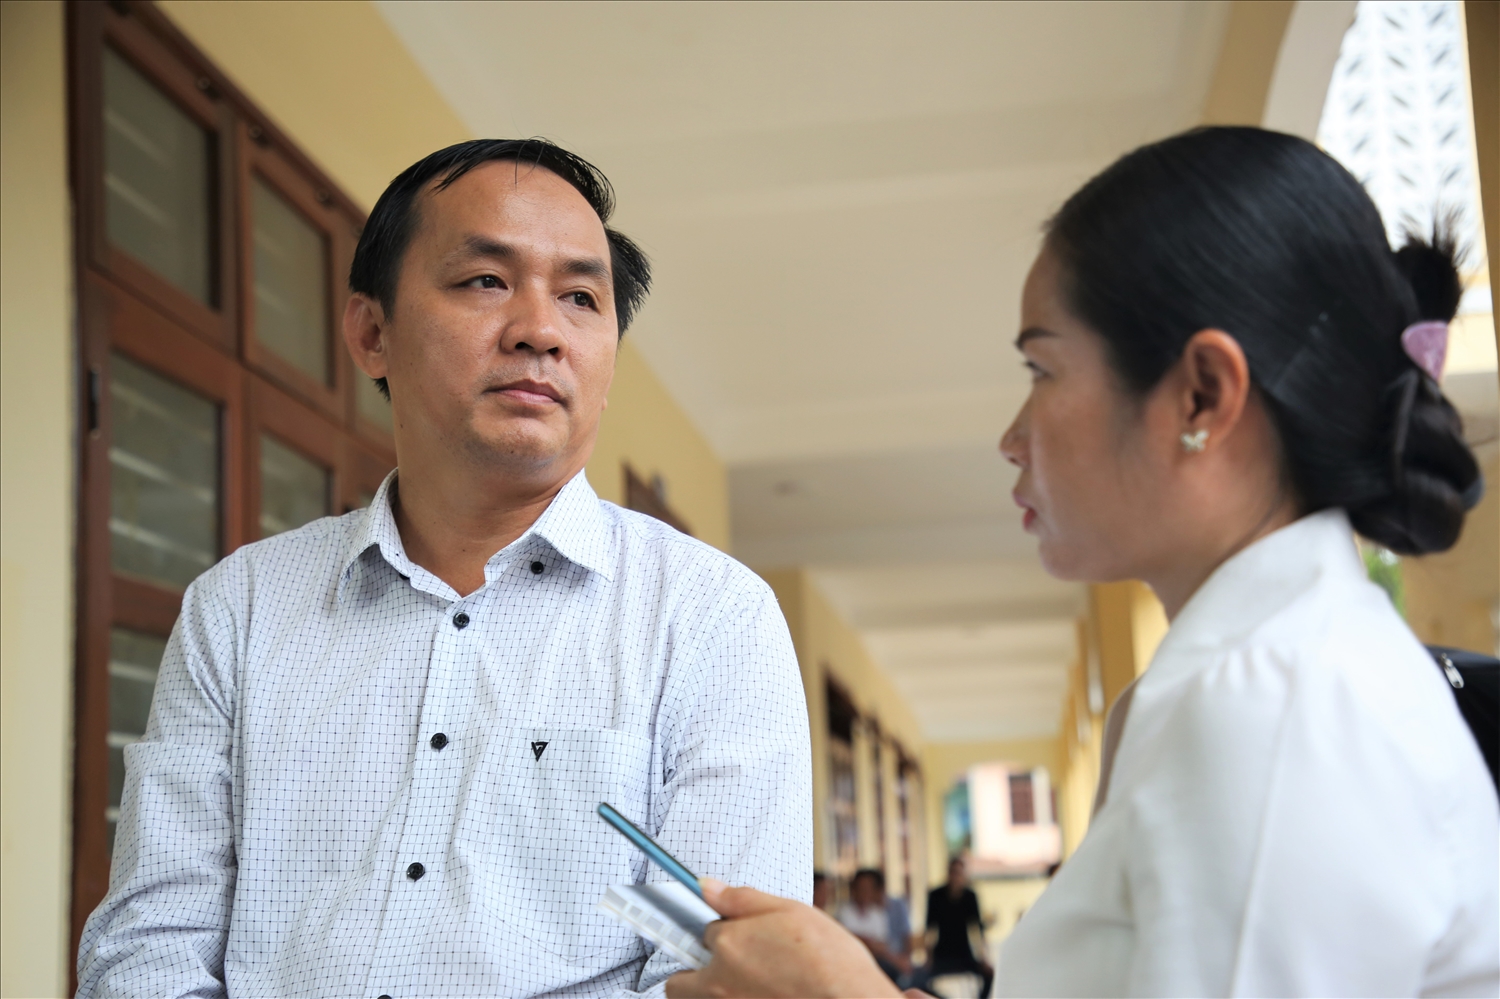 Anh Lê Huynh Trưởng phiên dịch lại nội dung cuộc gặp gỡ giữa lãnh đạo tỉnh và cộng đồng người Việt Nam tại Sê Kông với phóng viên Lào